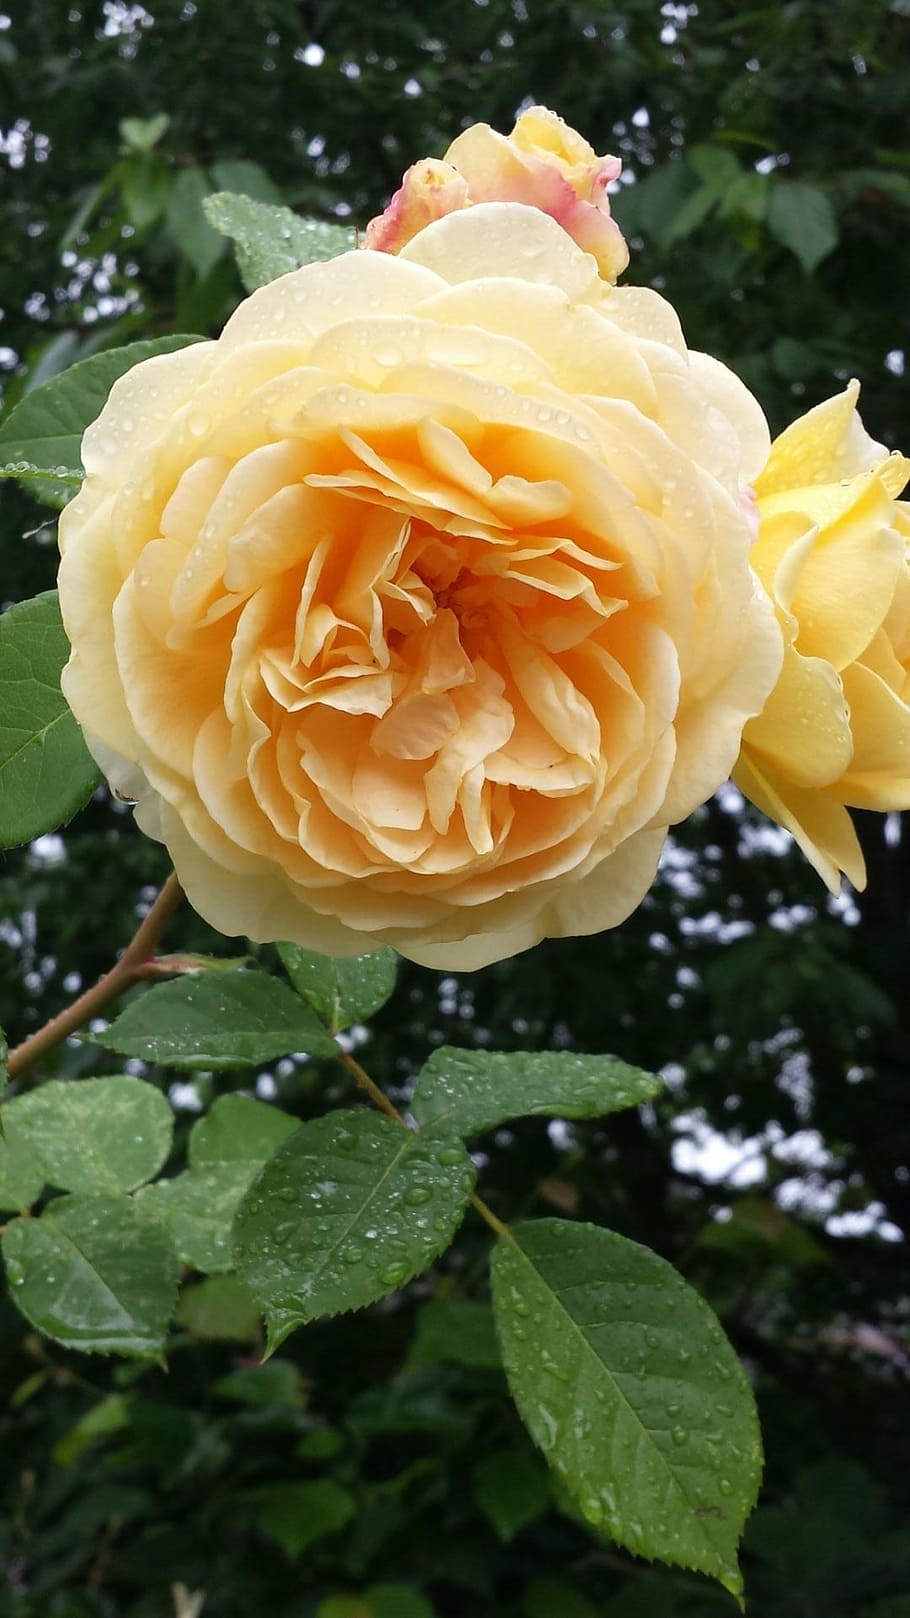 mawar ruffle ganda, mawar kuning, mekar, bunga, flora, tanaman, tanaman berbunga, keindahan di alam, daun bunga, kepala bunga